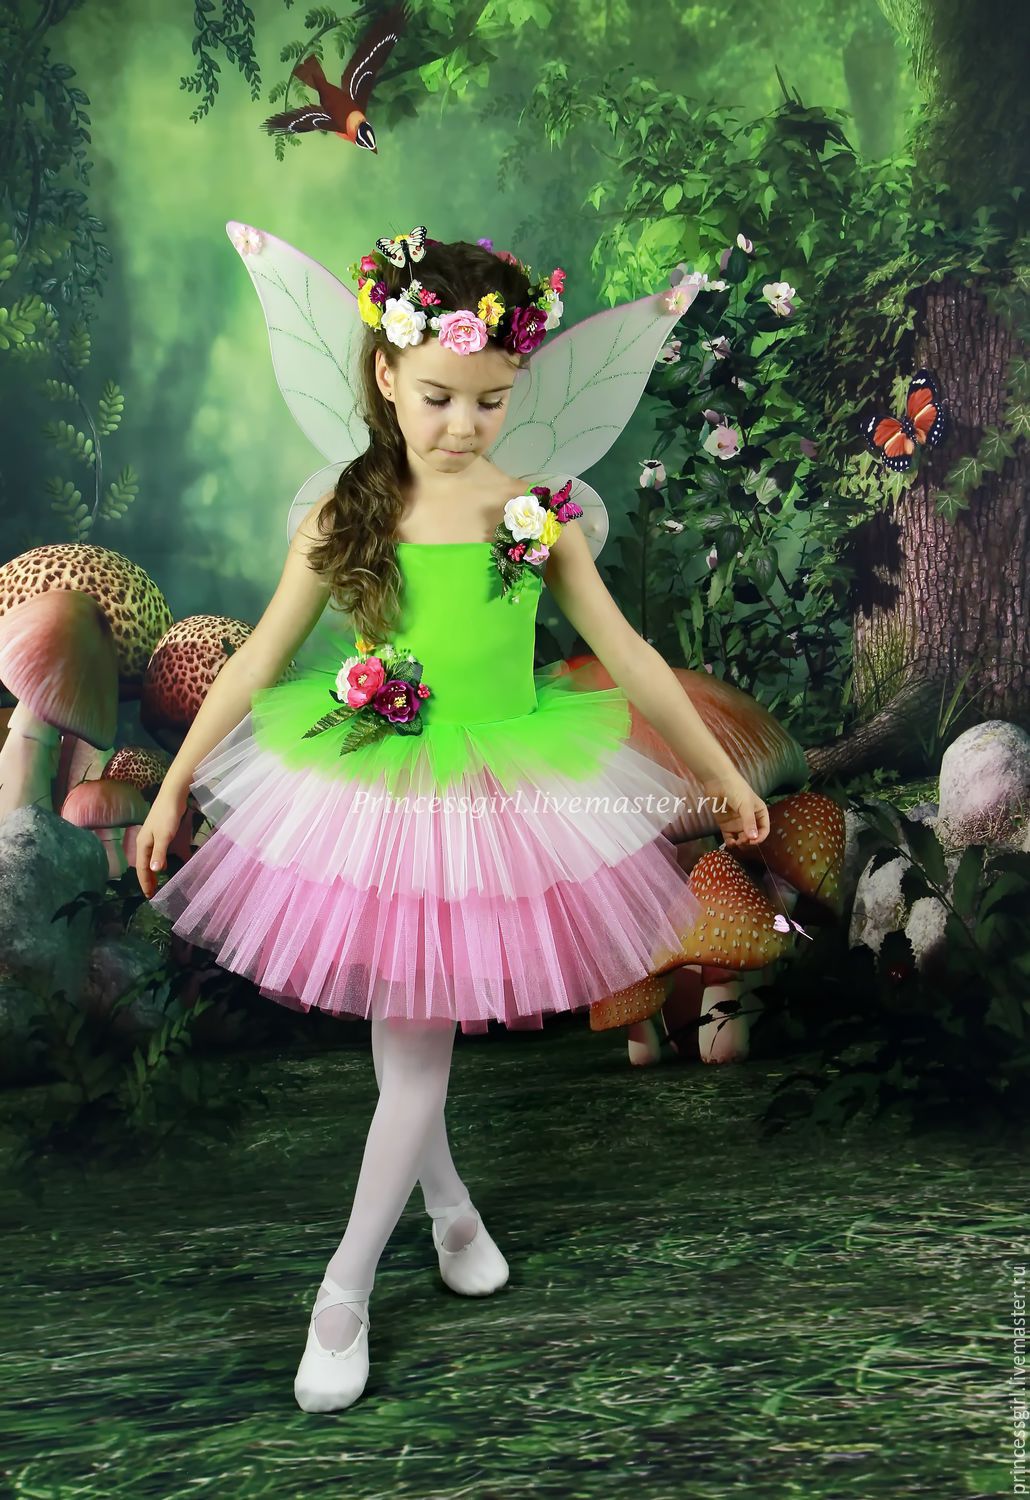 Карнавальный костюм фея сказочная розовая